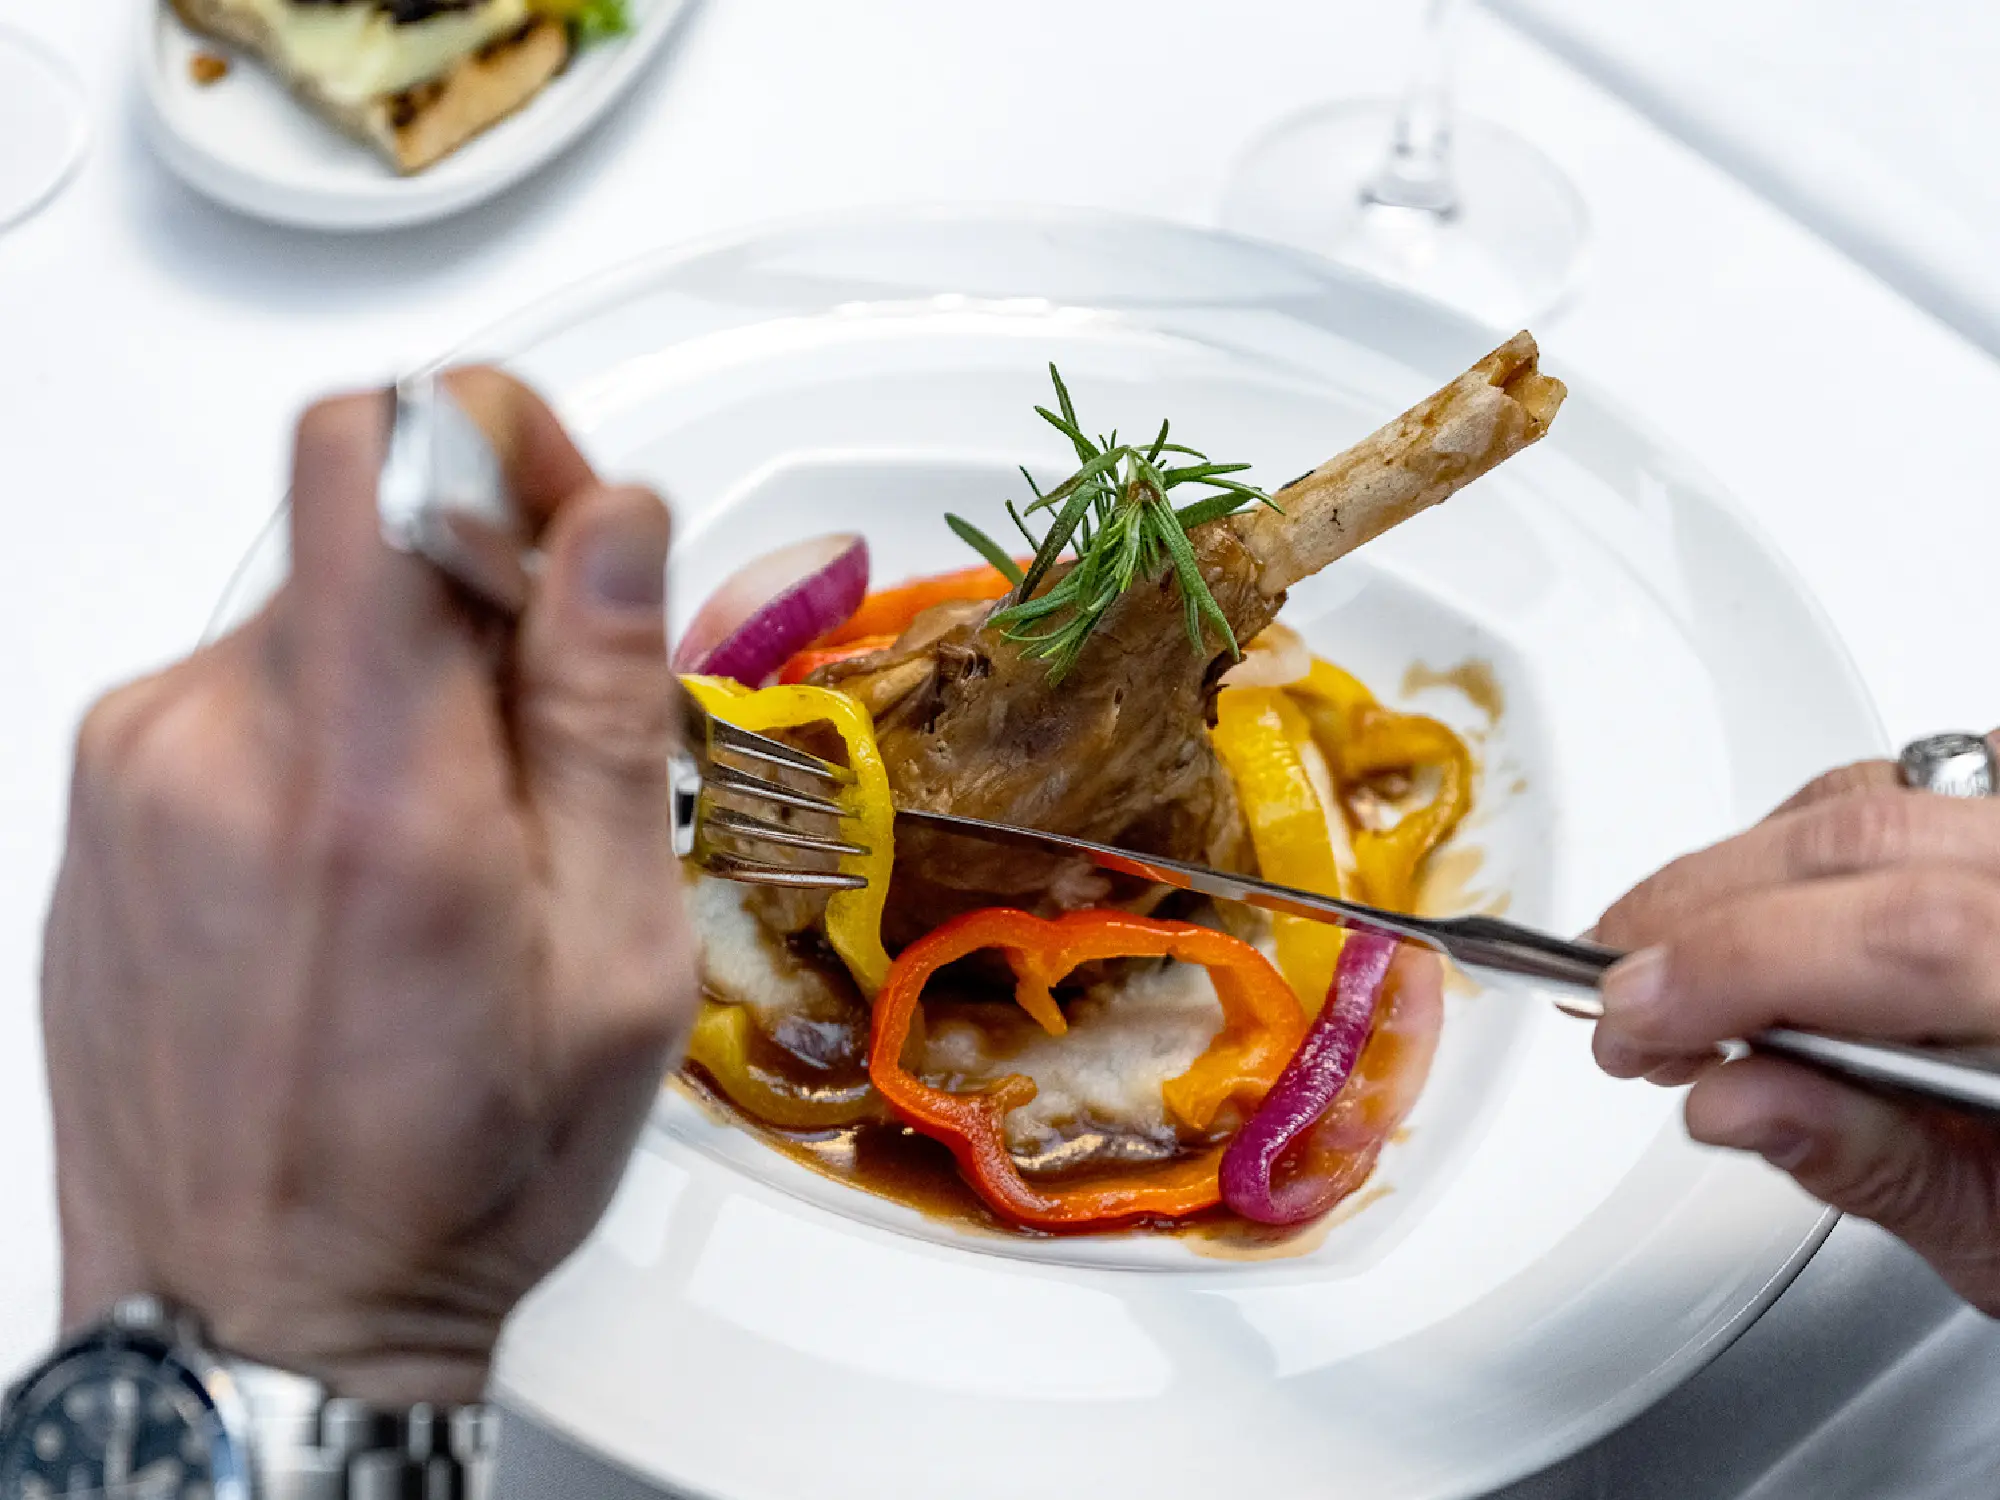 Litera'da dünya mutfağının renkli lezzetleriyle kültür turuna çıkın. 